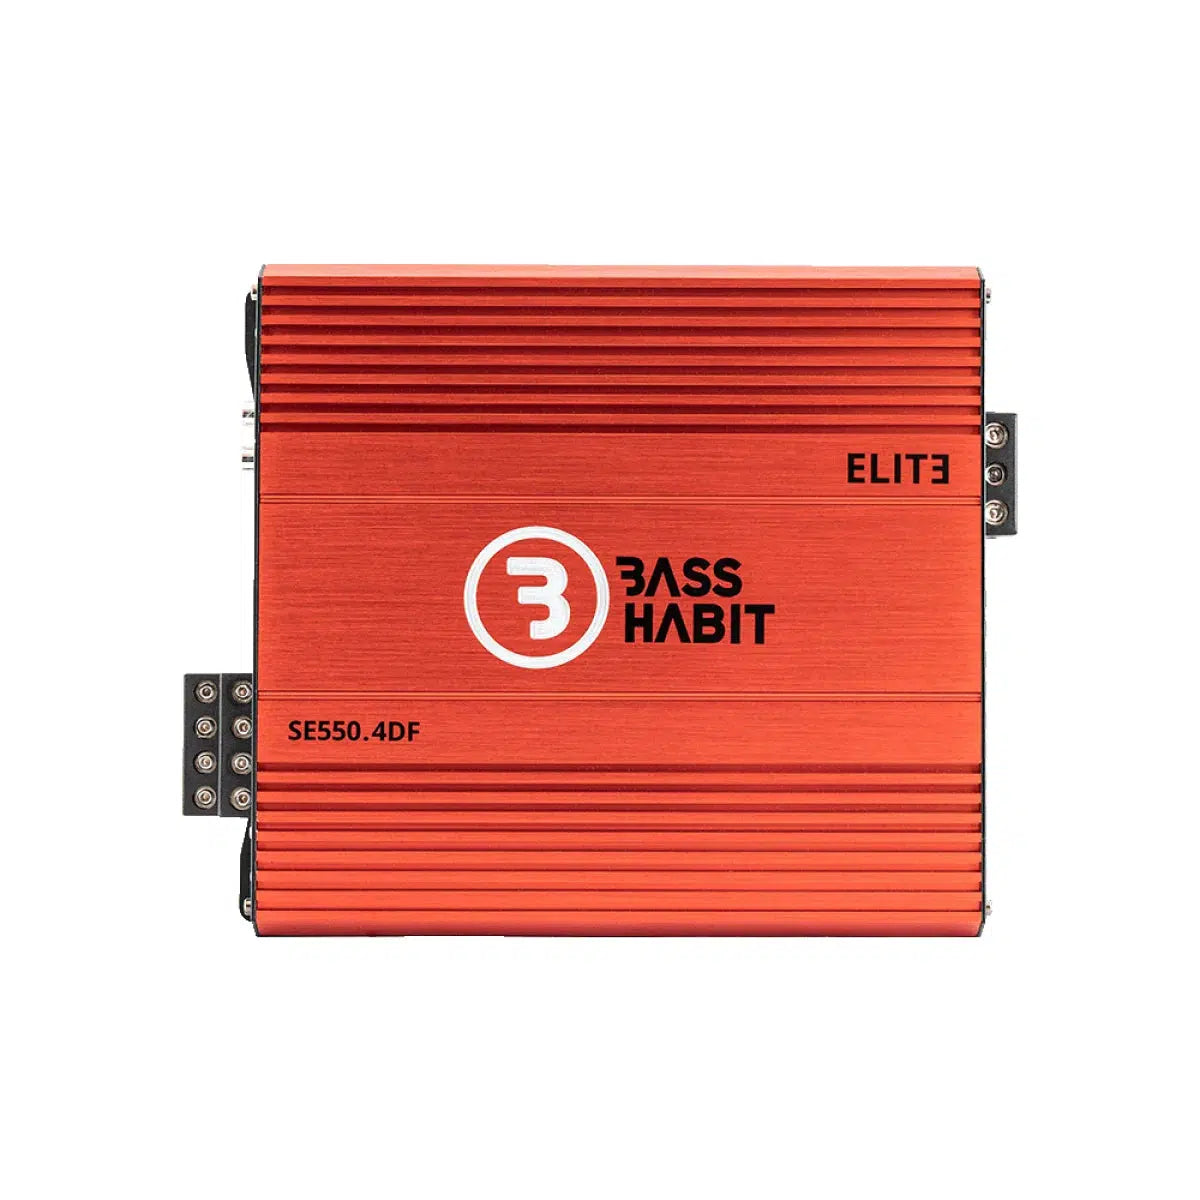 Bass Habit-Spl Elite 550.4DF-4 canaux Amplificateur-Masori.fr